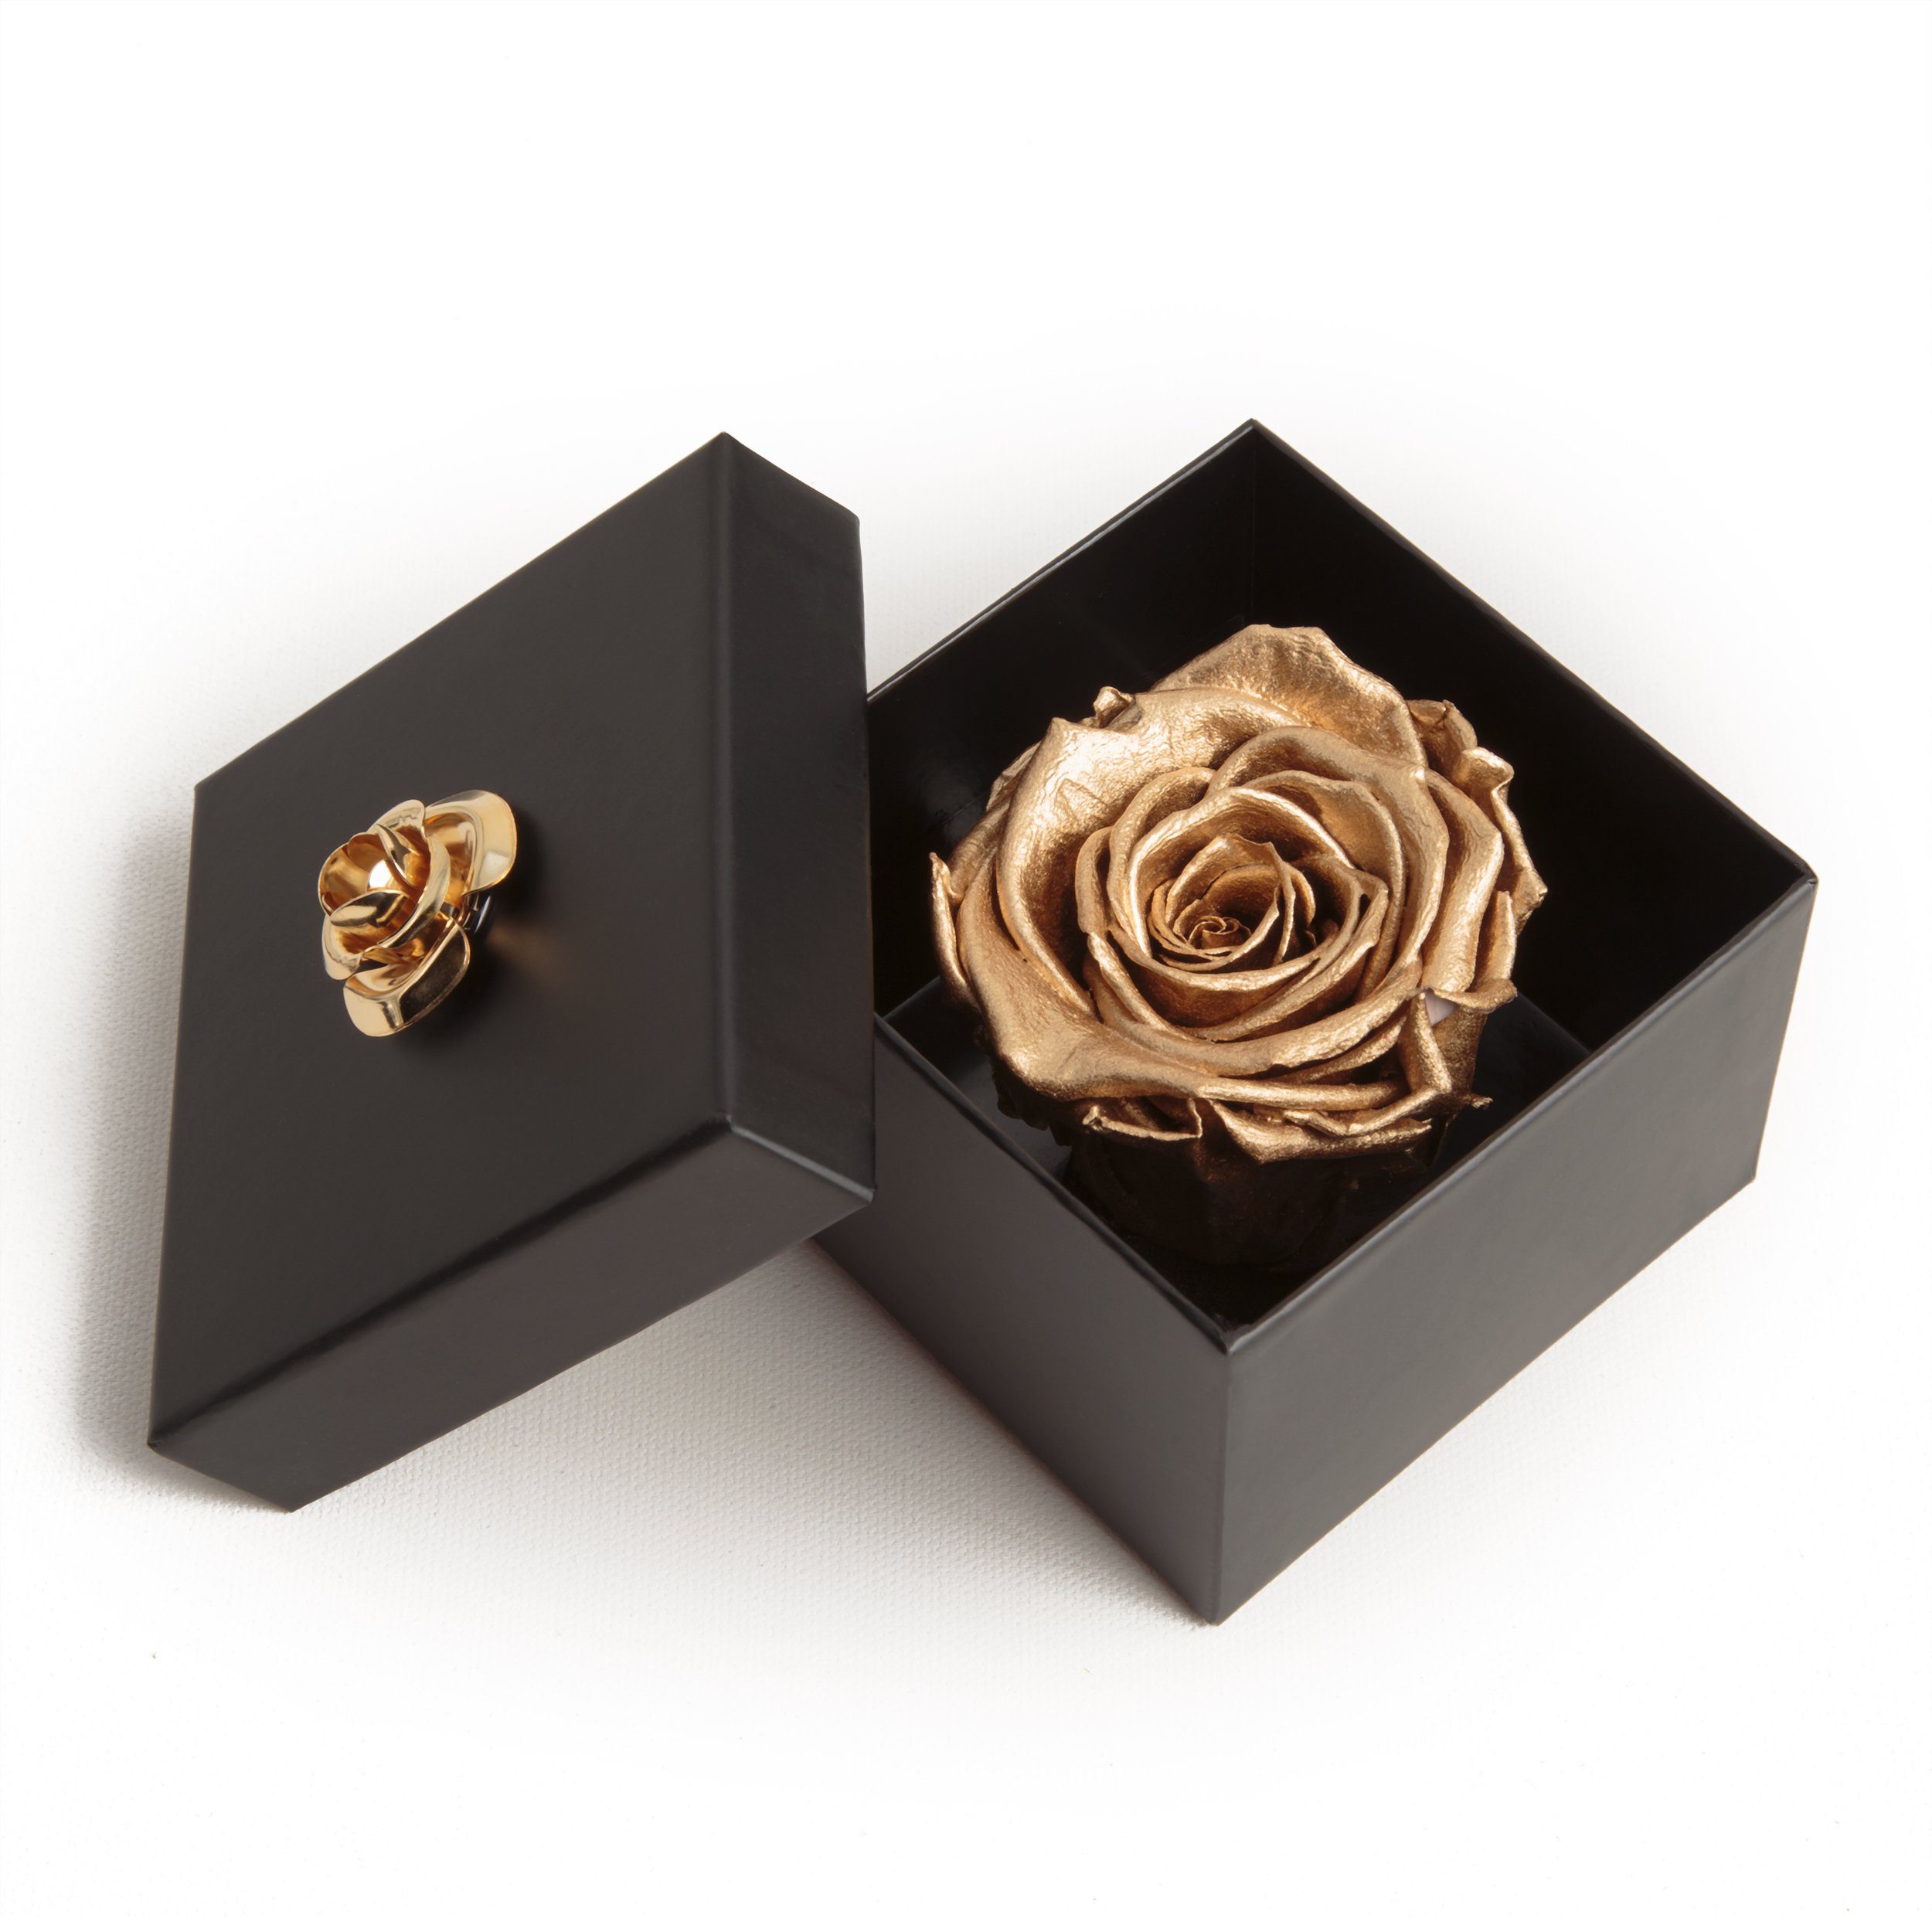 Kunstblume 1 Infinity Rose haltbar 3 Jahre Rose in Box mit Blumendeckel Rose, ROSEMARIE SCHULZ Heidelberg, Höhe 6.5 cm, Echte Rose haltbar bis zu 3 Jahre gold | Kunstblumen